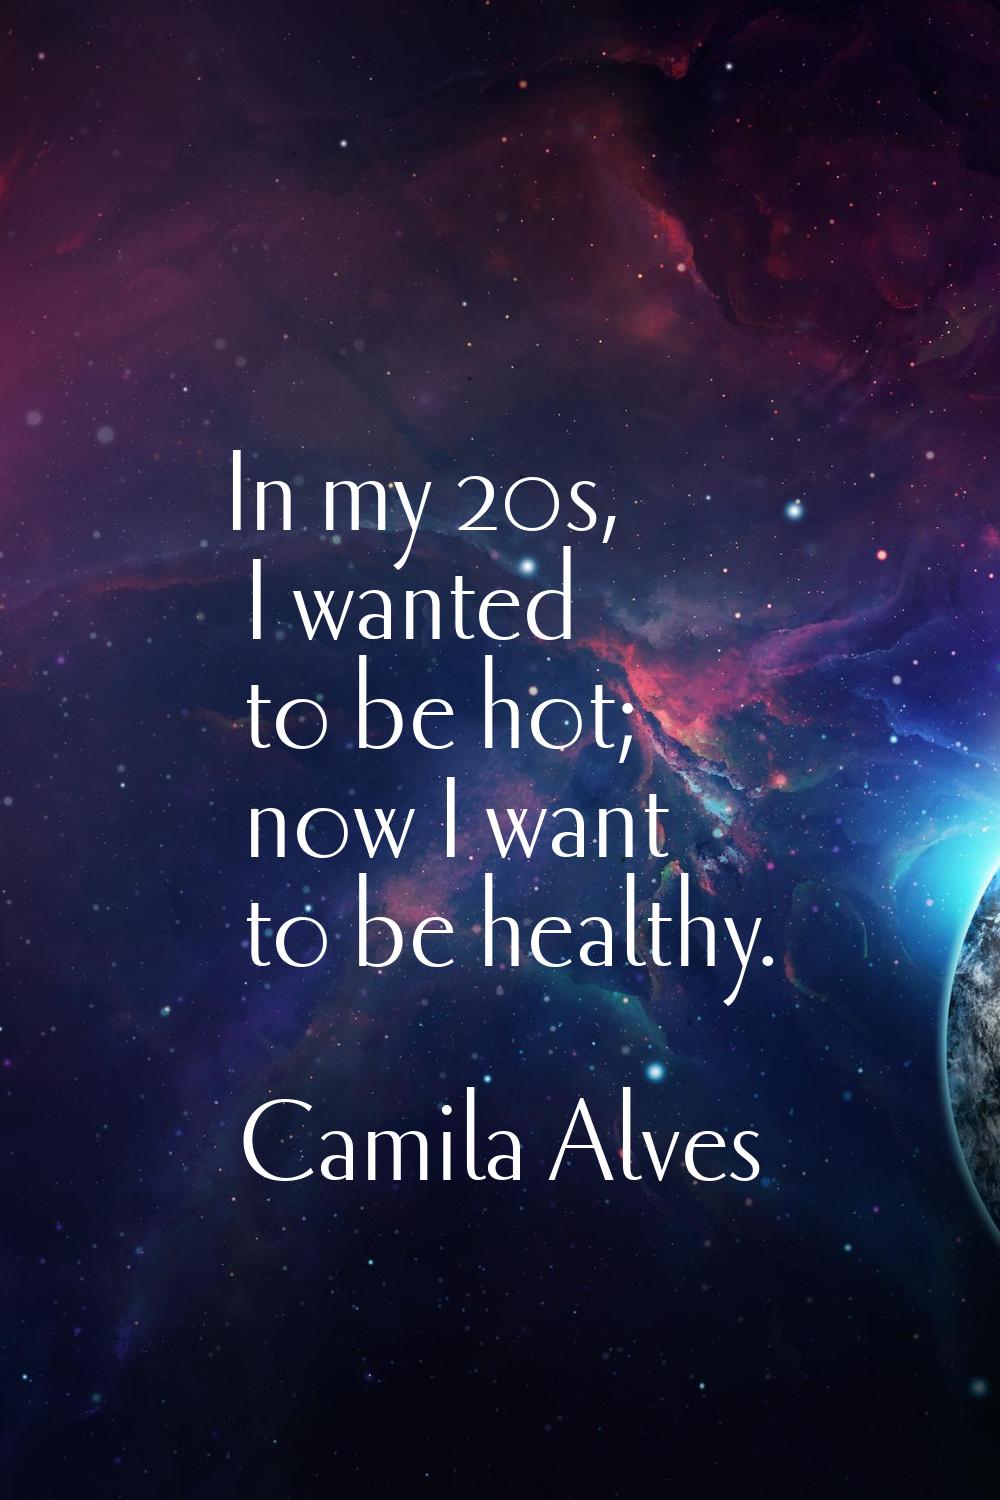 In my 20s, I wanted to be hot; now I want to be healthy.